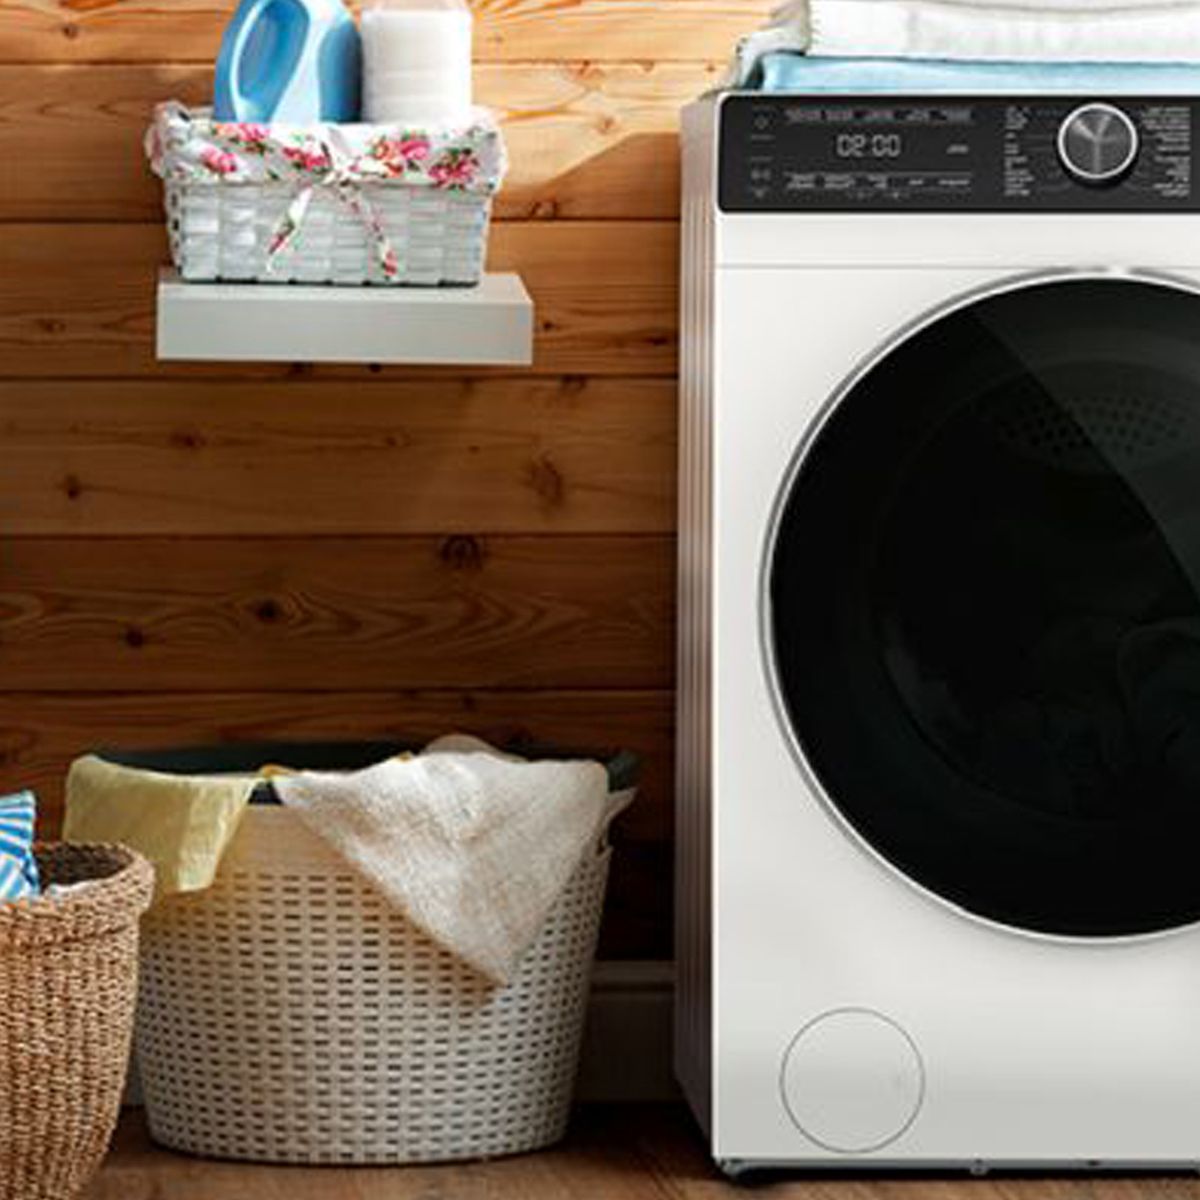 Barata de no creer: esta lavadora de alta capacidad tiene autodosis y  cuesta solo 399 euros